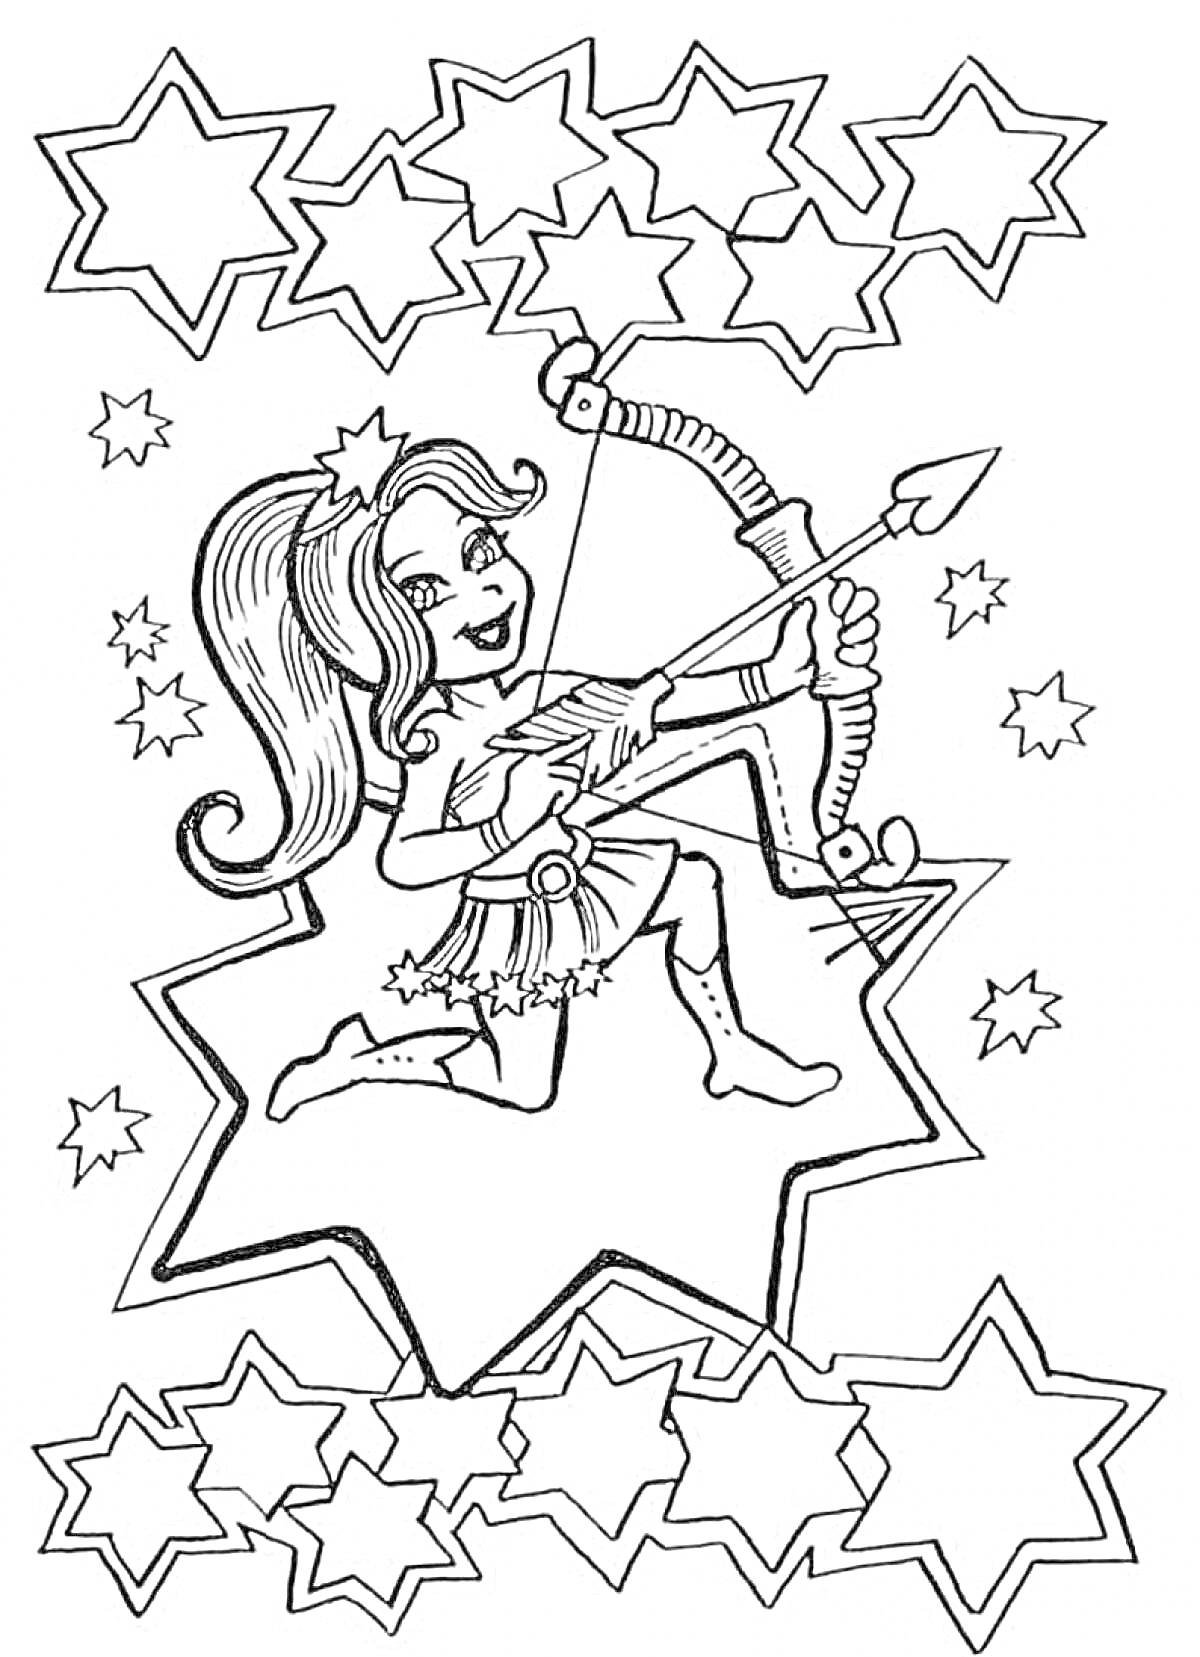 Девочка-зодиакальный знак Стрелец с луком и стрелой на фоне звёзд